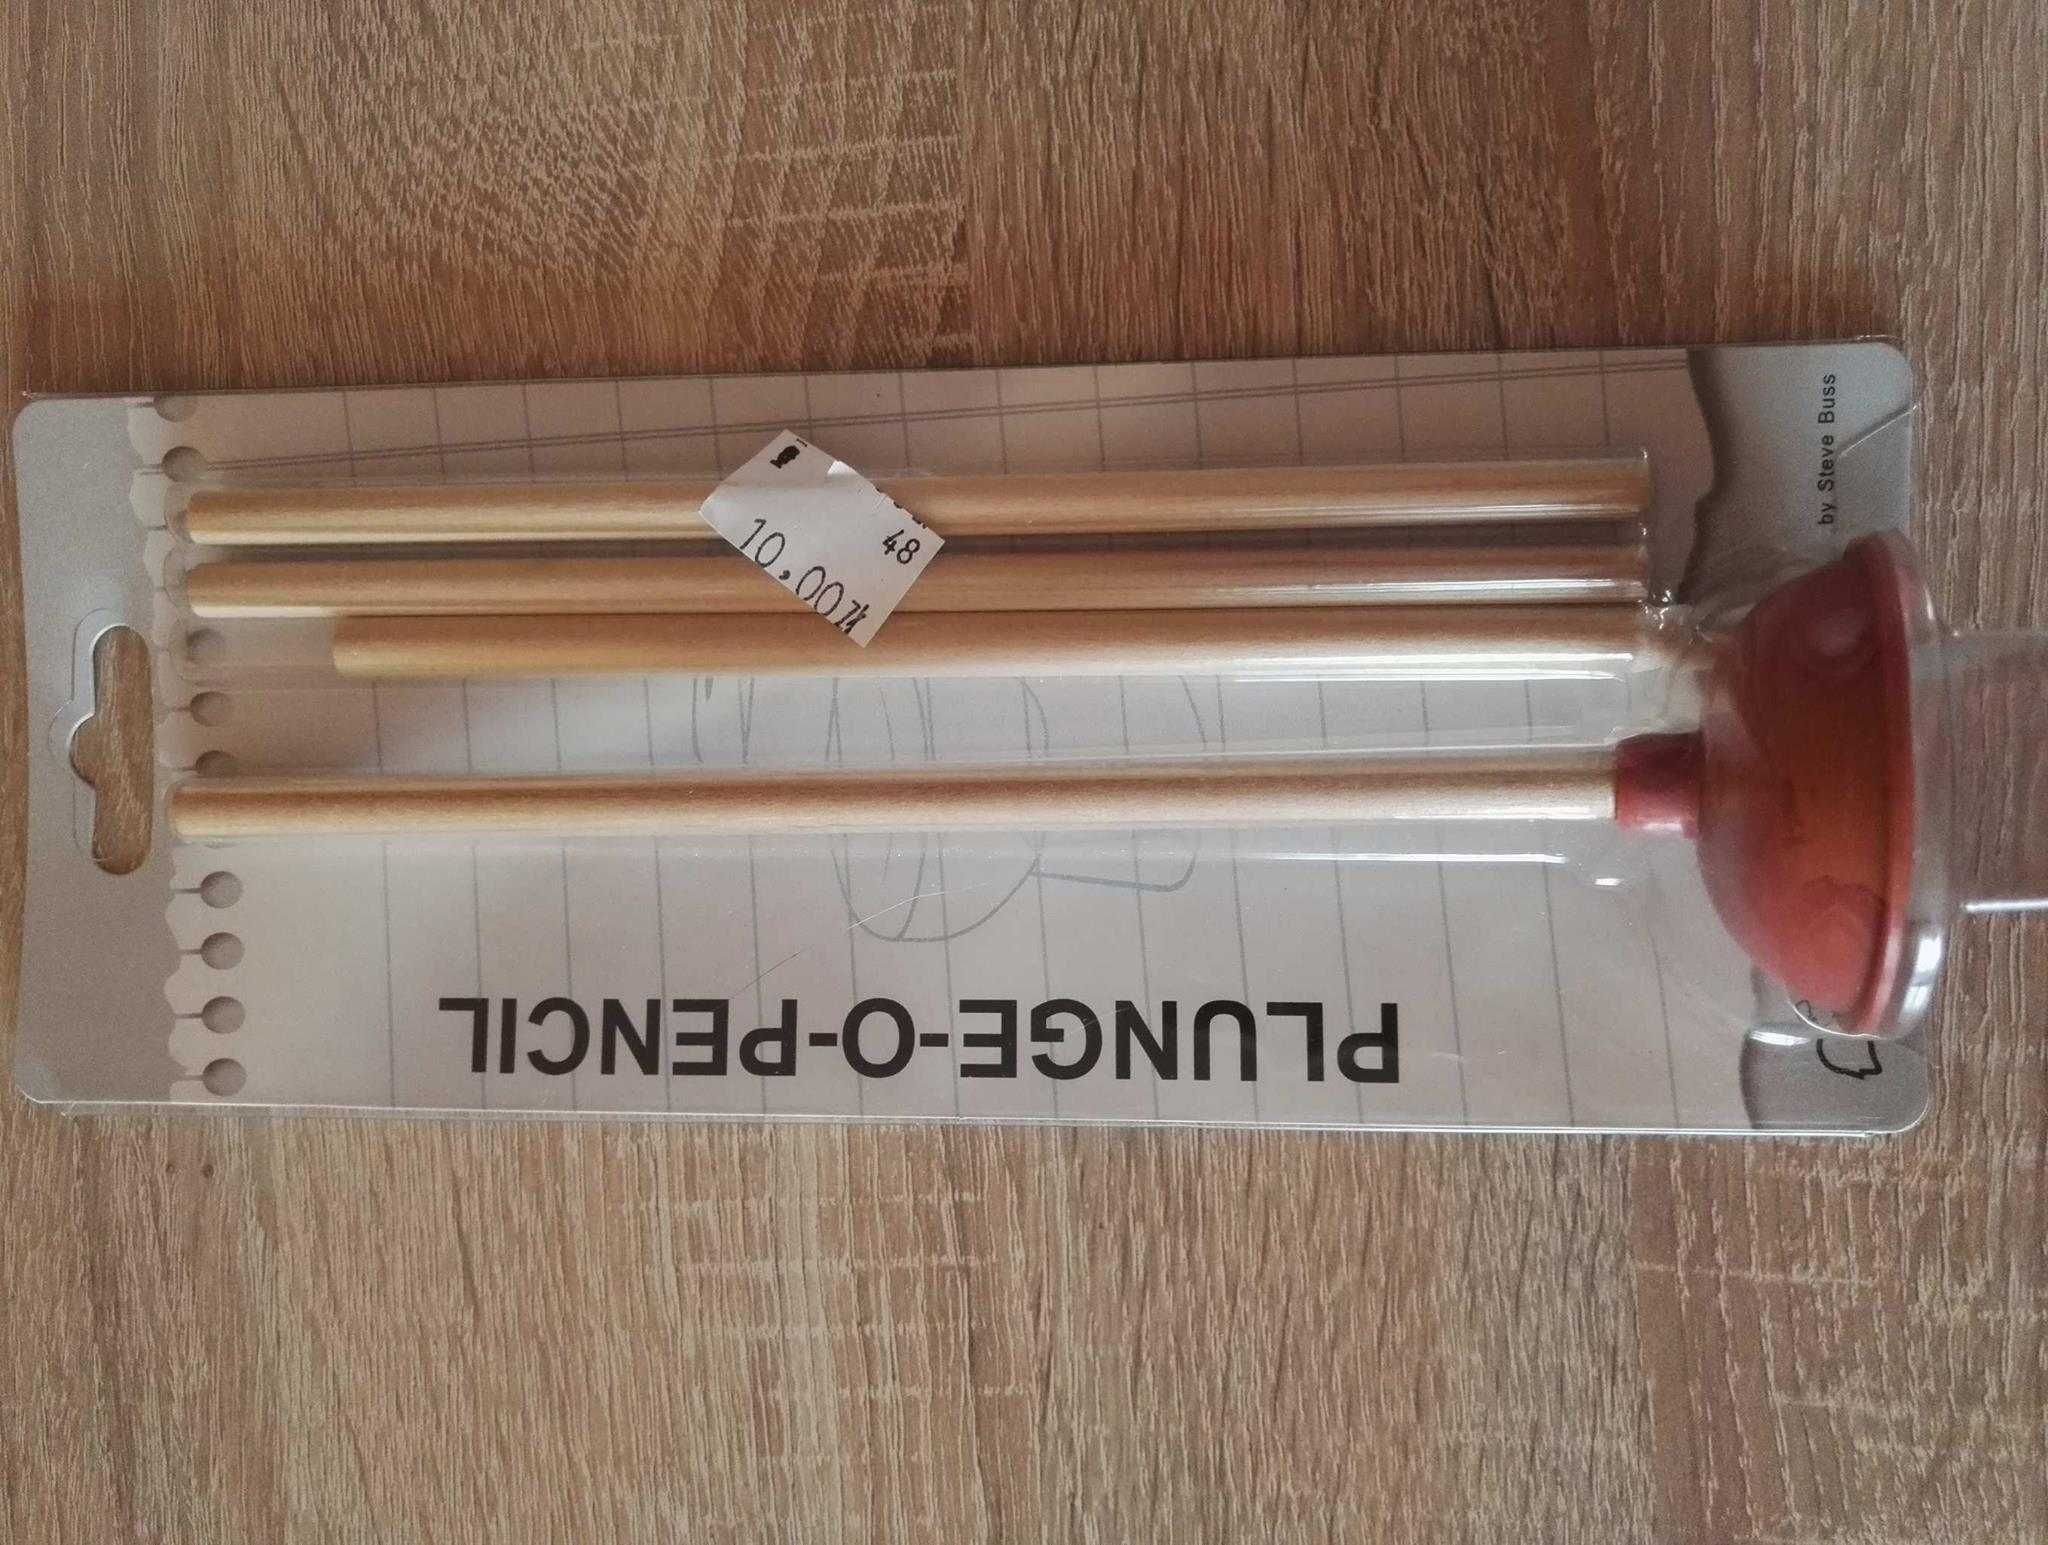 Ołówek przepychaczka - zestaw 4 ołówków + podstawka przepychaczka